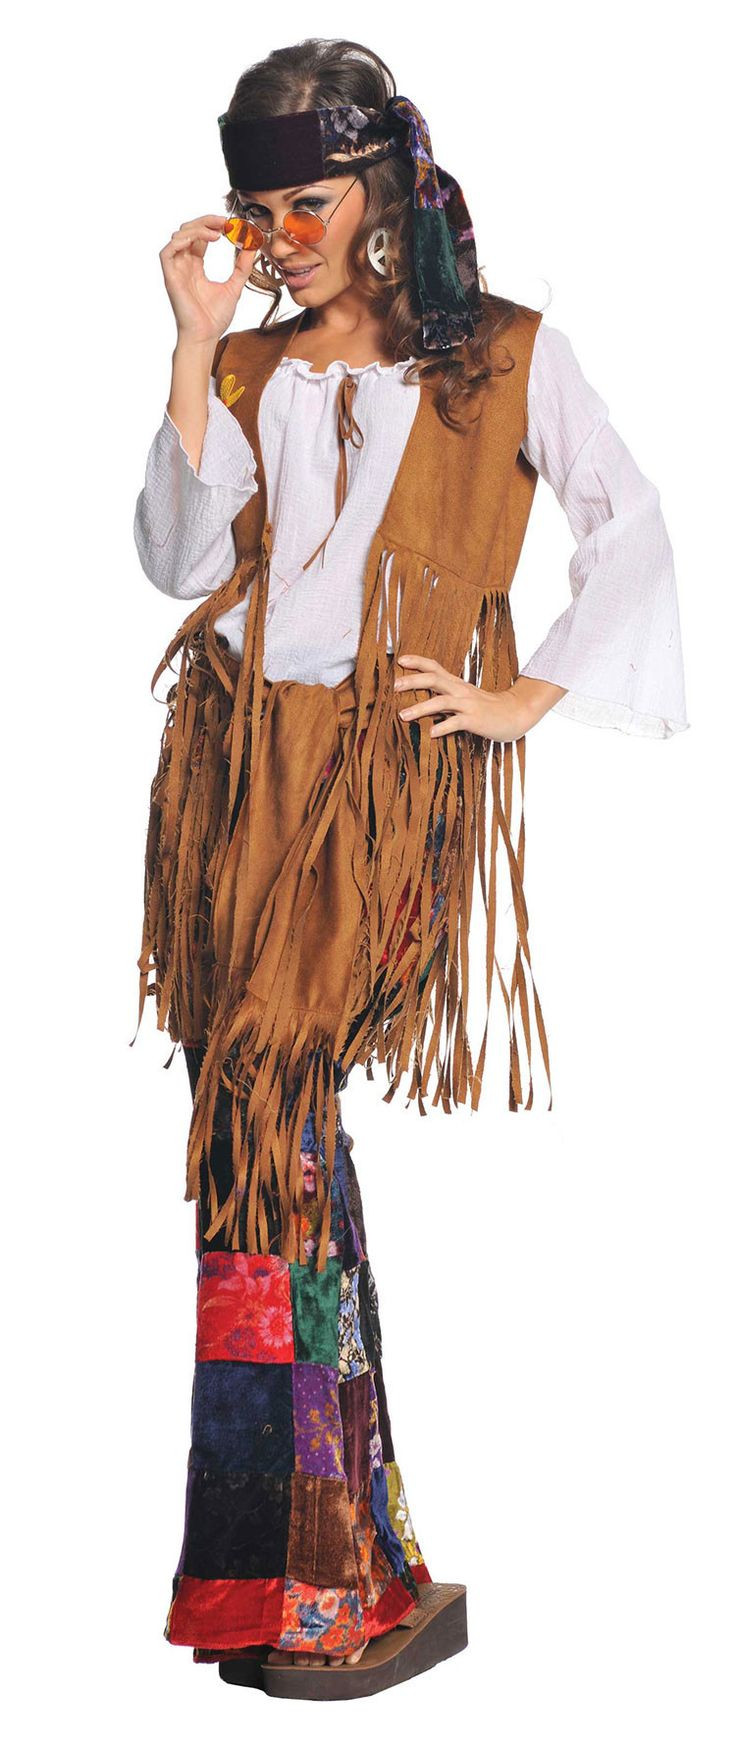 Hippie Halloween Costume DIY
 25 best ideas about Diy hippie costume on Pinterest